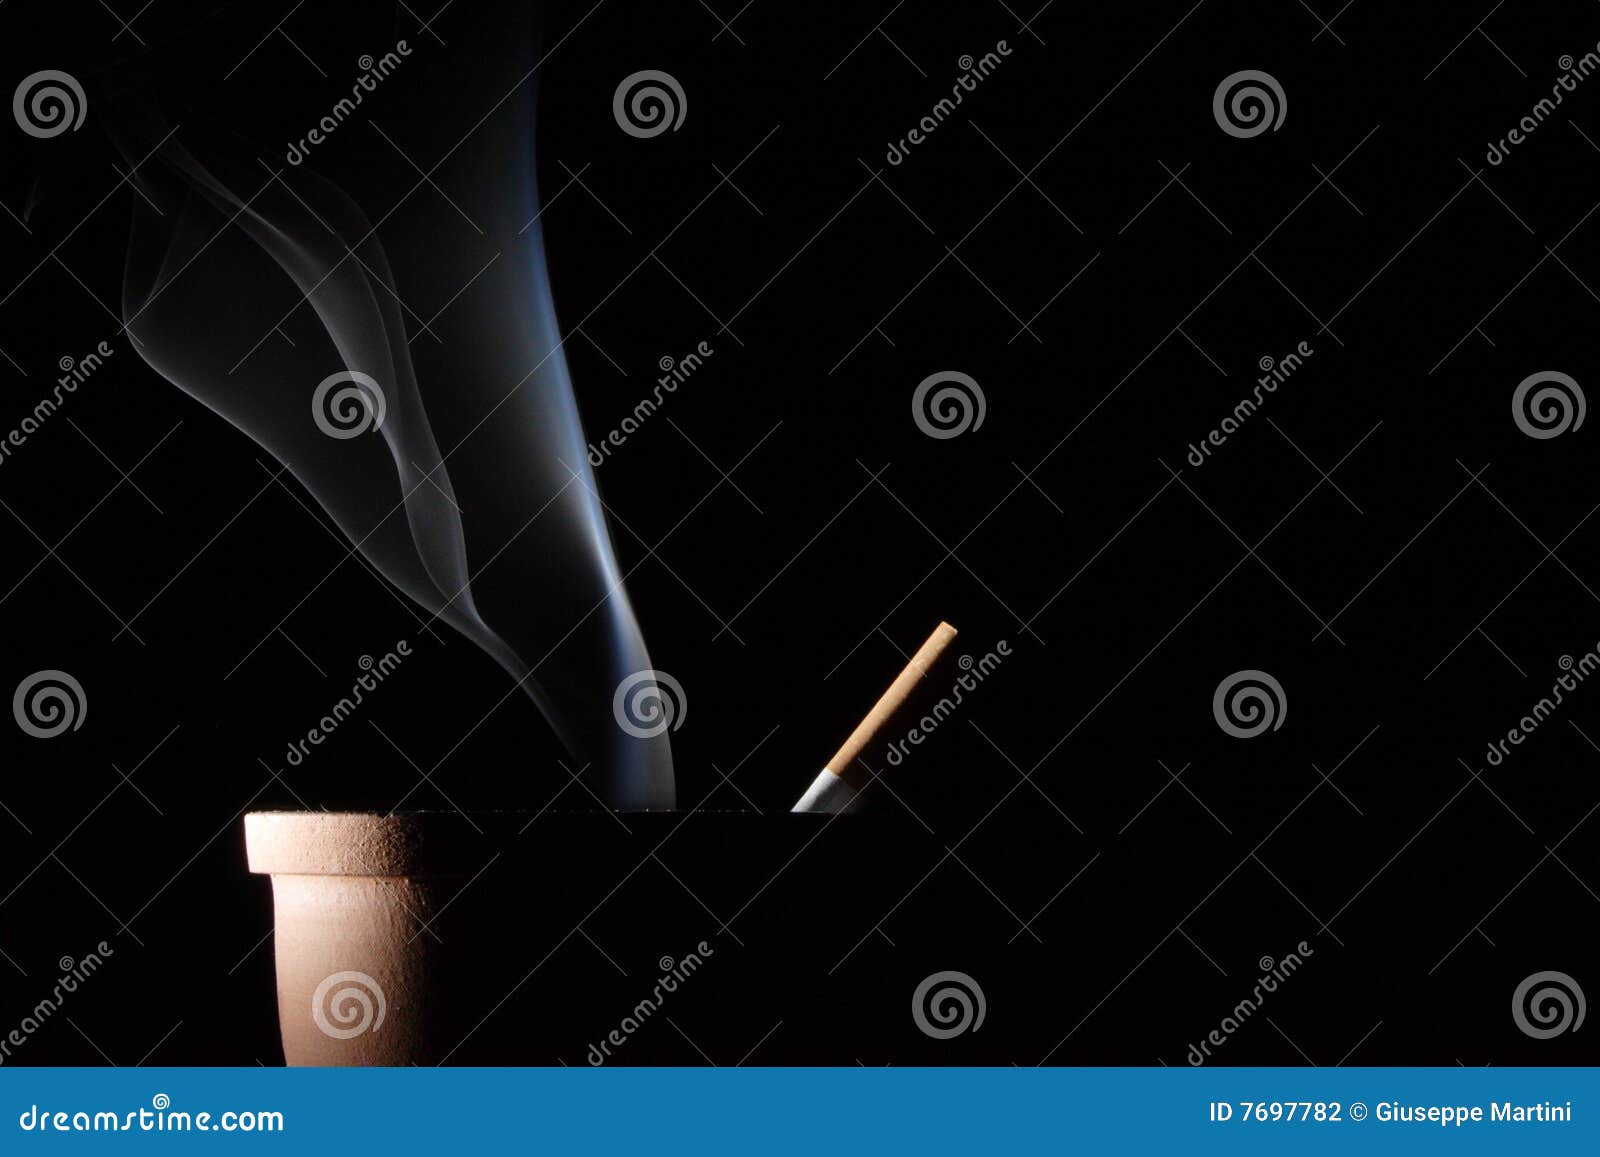 Дым сигарет минус. Звездное небо дым от сигареты. Cigarettes Smoke FX.